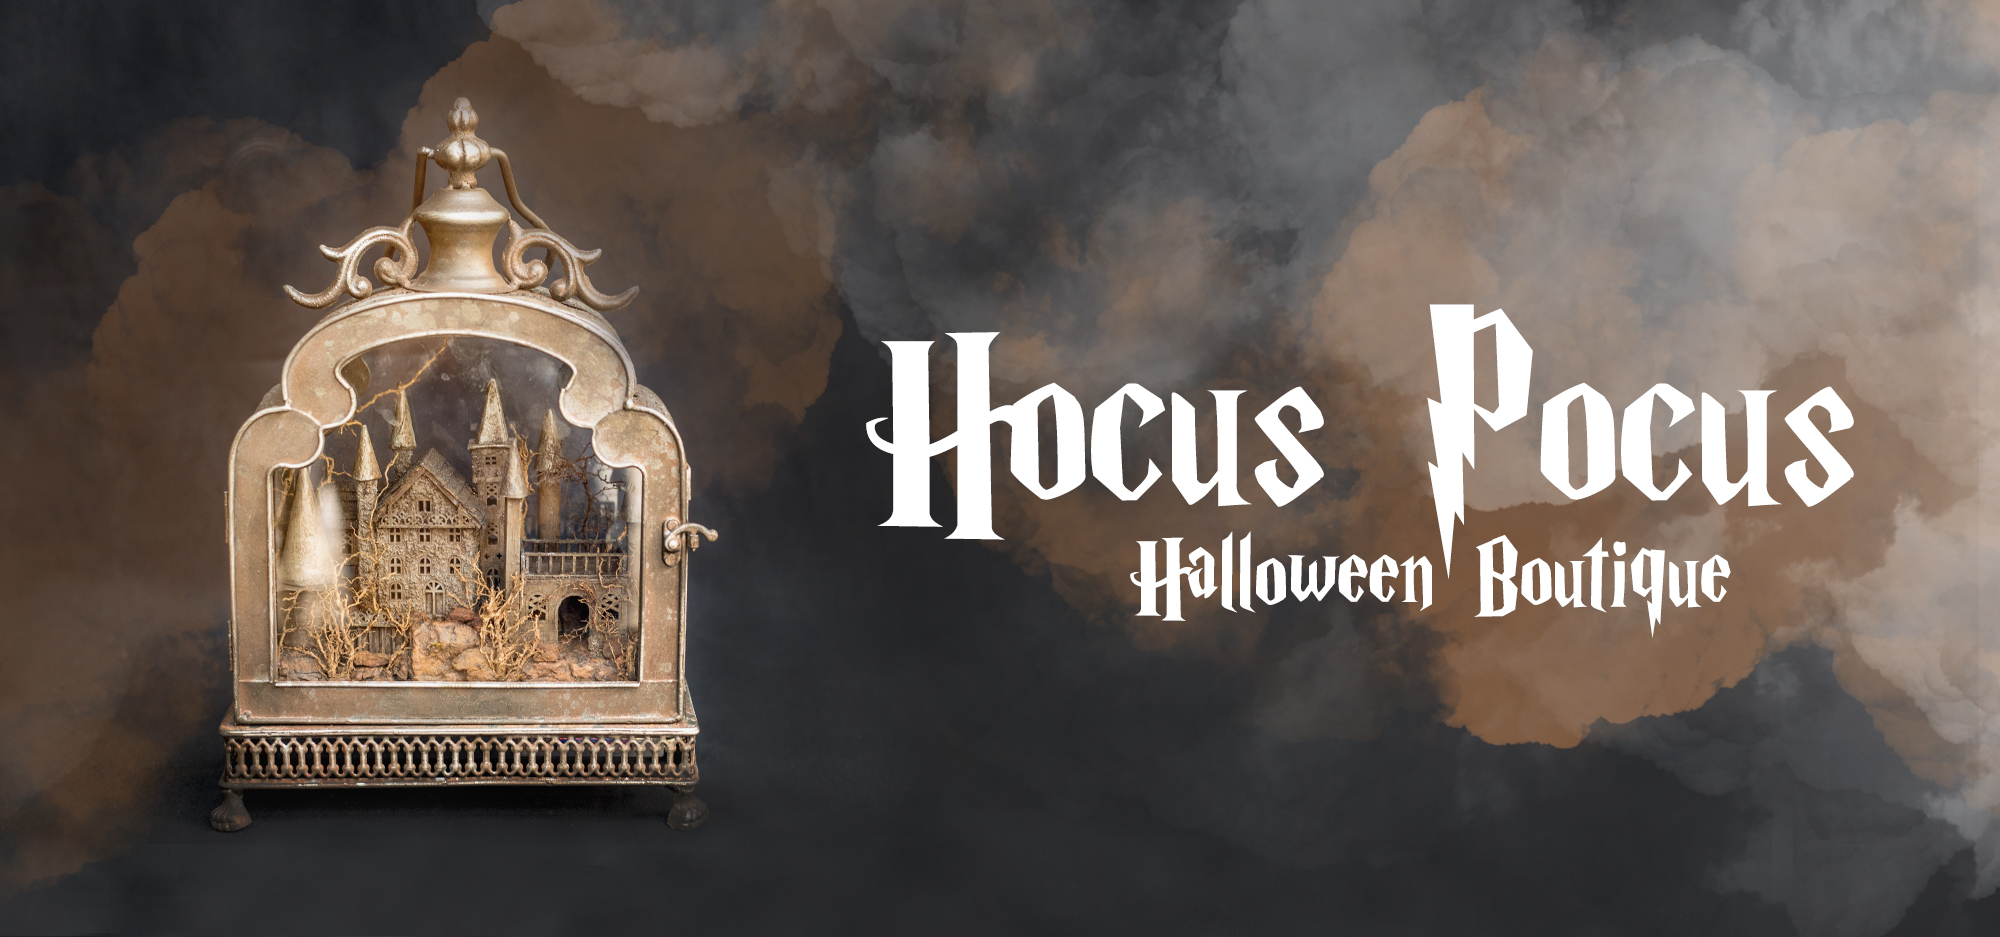 Halloween Boutique Opening Hocus Pocus Roger S Gardens